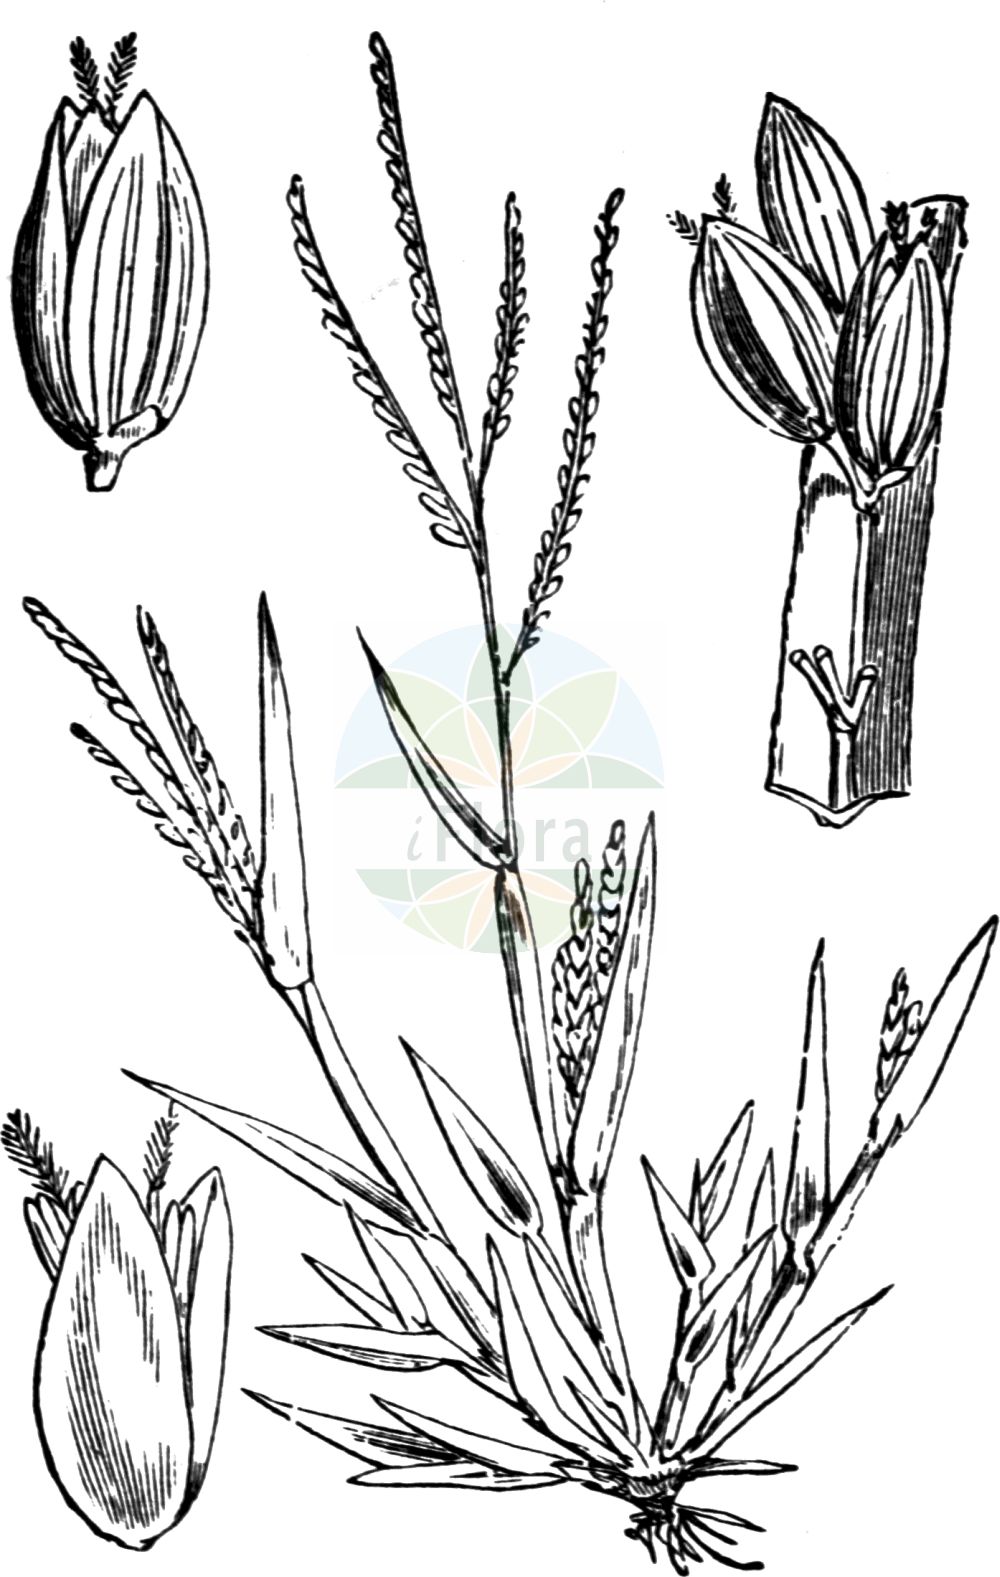 Historische Abbildung von Digitaria ischaemum (Faden-Fingerhirse - Smooth Finger-grass). Das Bild zeigt Blatt, Bluete, Frucht und Same. ---- Historical Drawing of Digitaria ischaemum (Faden-Fingerhirse - Smooth Finger-grass). The image is showing leaf, flower, fruit and seed.(Digitaria ischaemum,Faden-Fingerhirse,Smooth Finger-grass,Digitaria glabra,Digitaria humifusa,Digitaria ischaemum,Digitaria linearis,Panicum filiforme,Panicum glabrum,Panicum ischaemum,Faden-Fingerhirse,Fadenhirse,Kahle Fingerhirse,Smooth Finger-grass,Red Millet,Smooth Crabgrass,Smooth Summergrass,Digitaria,Fingerhirse,Crabgrass,Poaceae,Süßgräser,Grass family,Blatt,Bluete,Frucht,Same,leaf,flower,fruit,seed,Fitch et al. (1880))